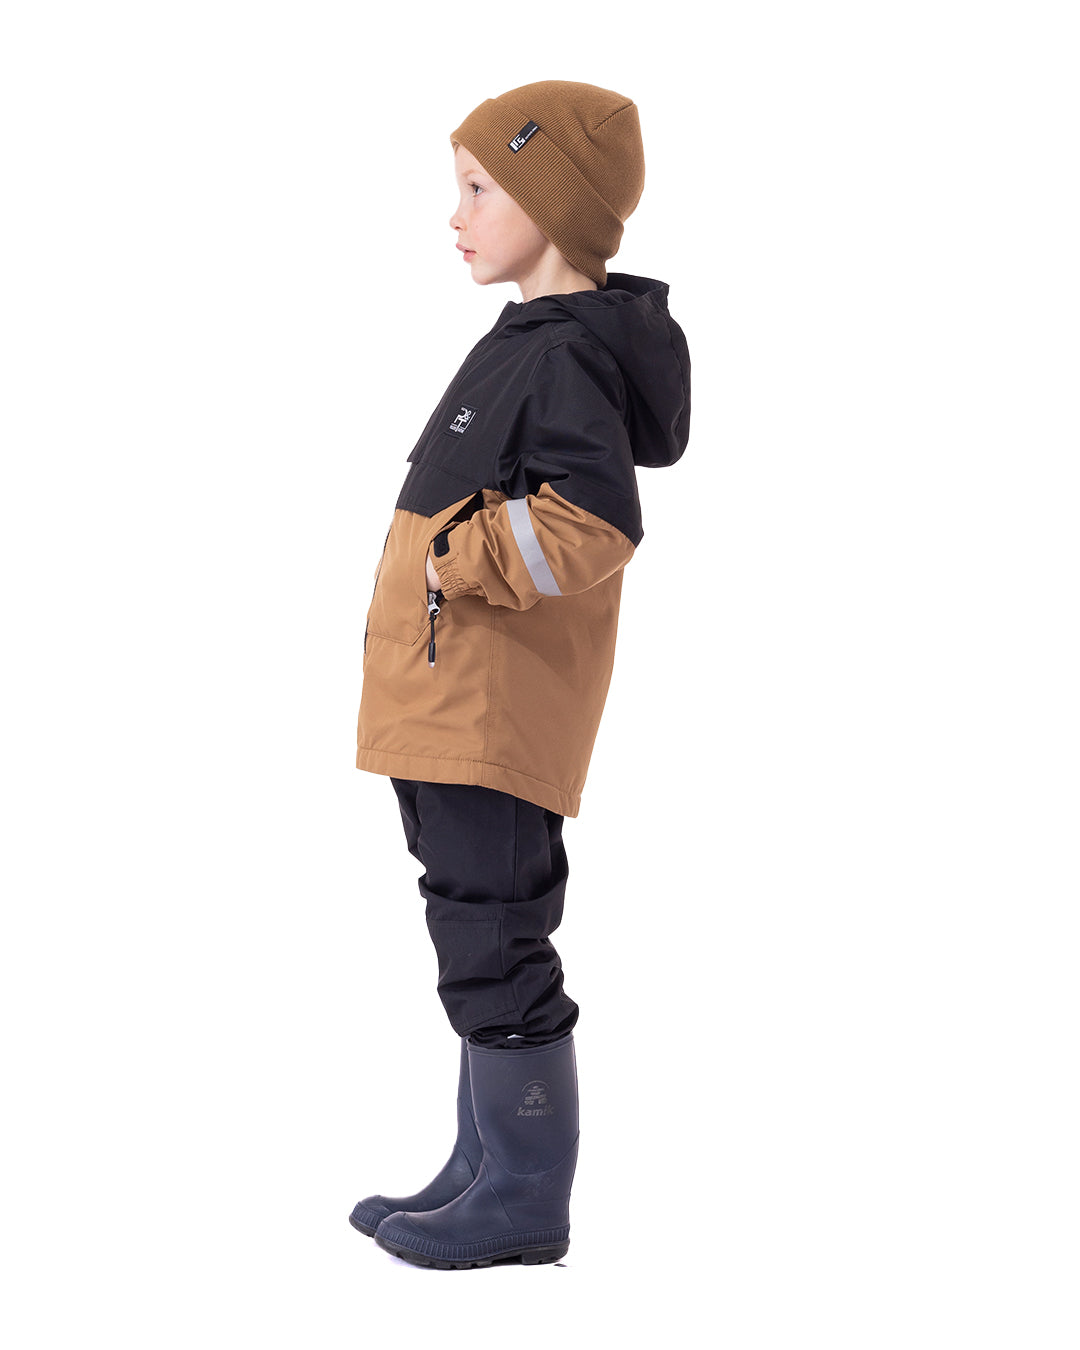 Kid rain coat Adrien